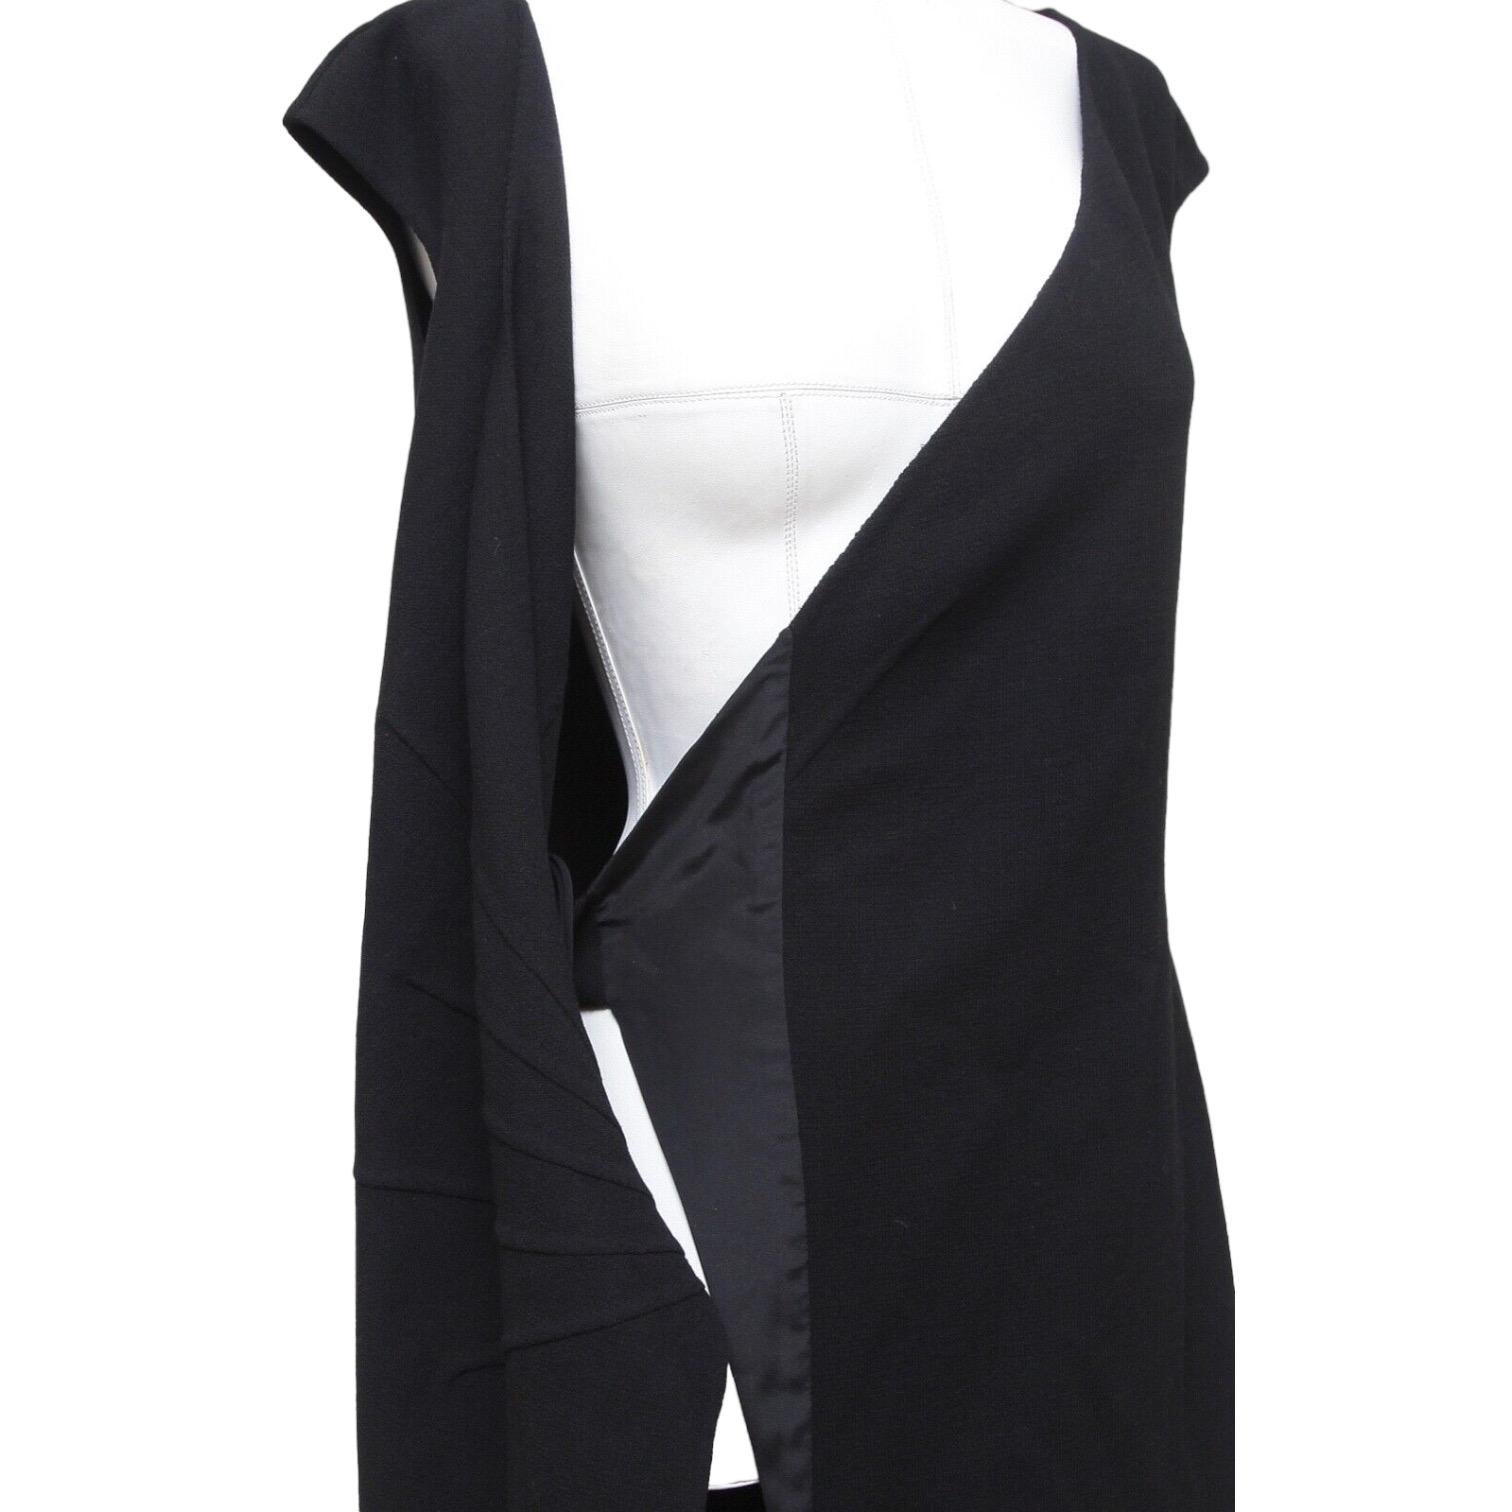 OSCAR DE LA RENTA Dress Black Sleeveless Wrap Knit Sz 8 NWT $2190 2